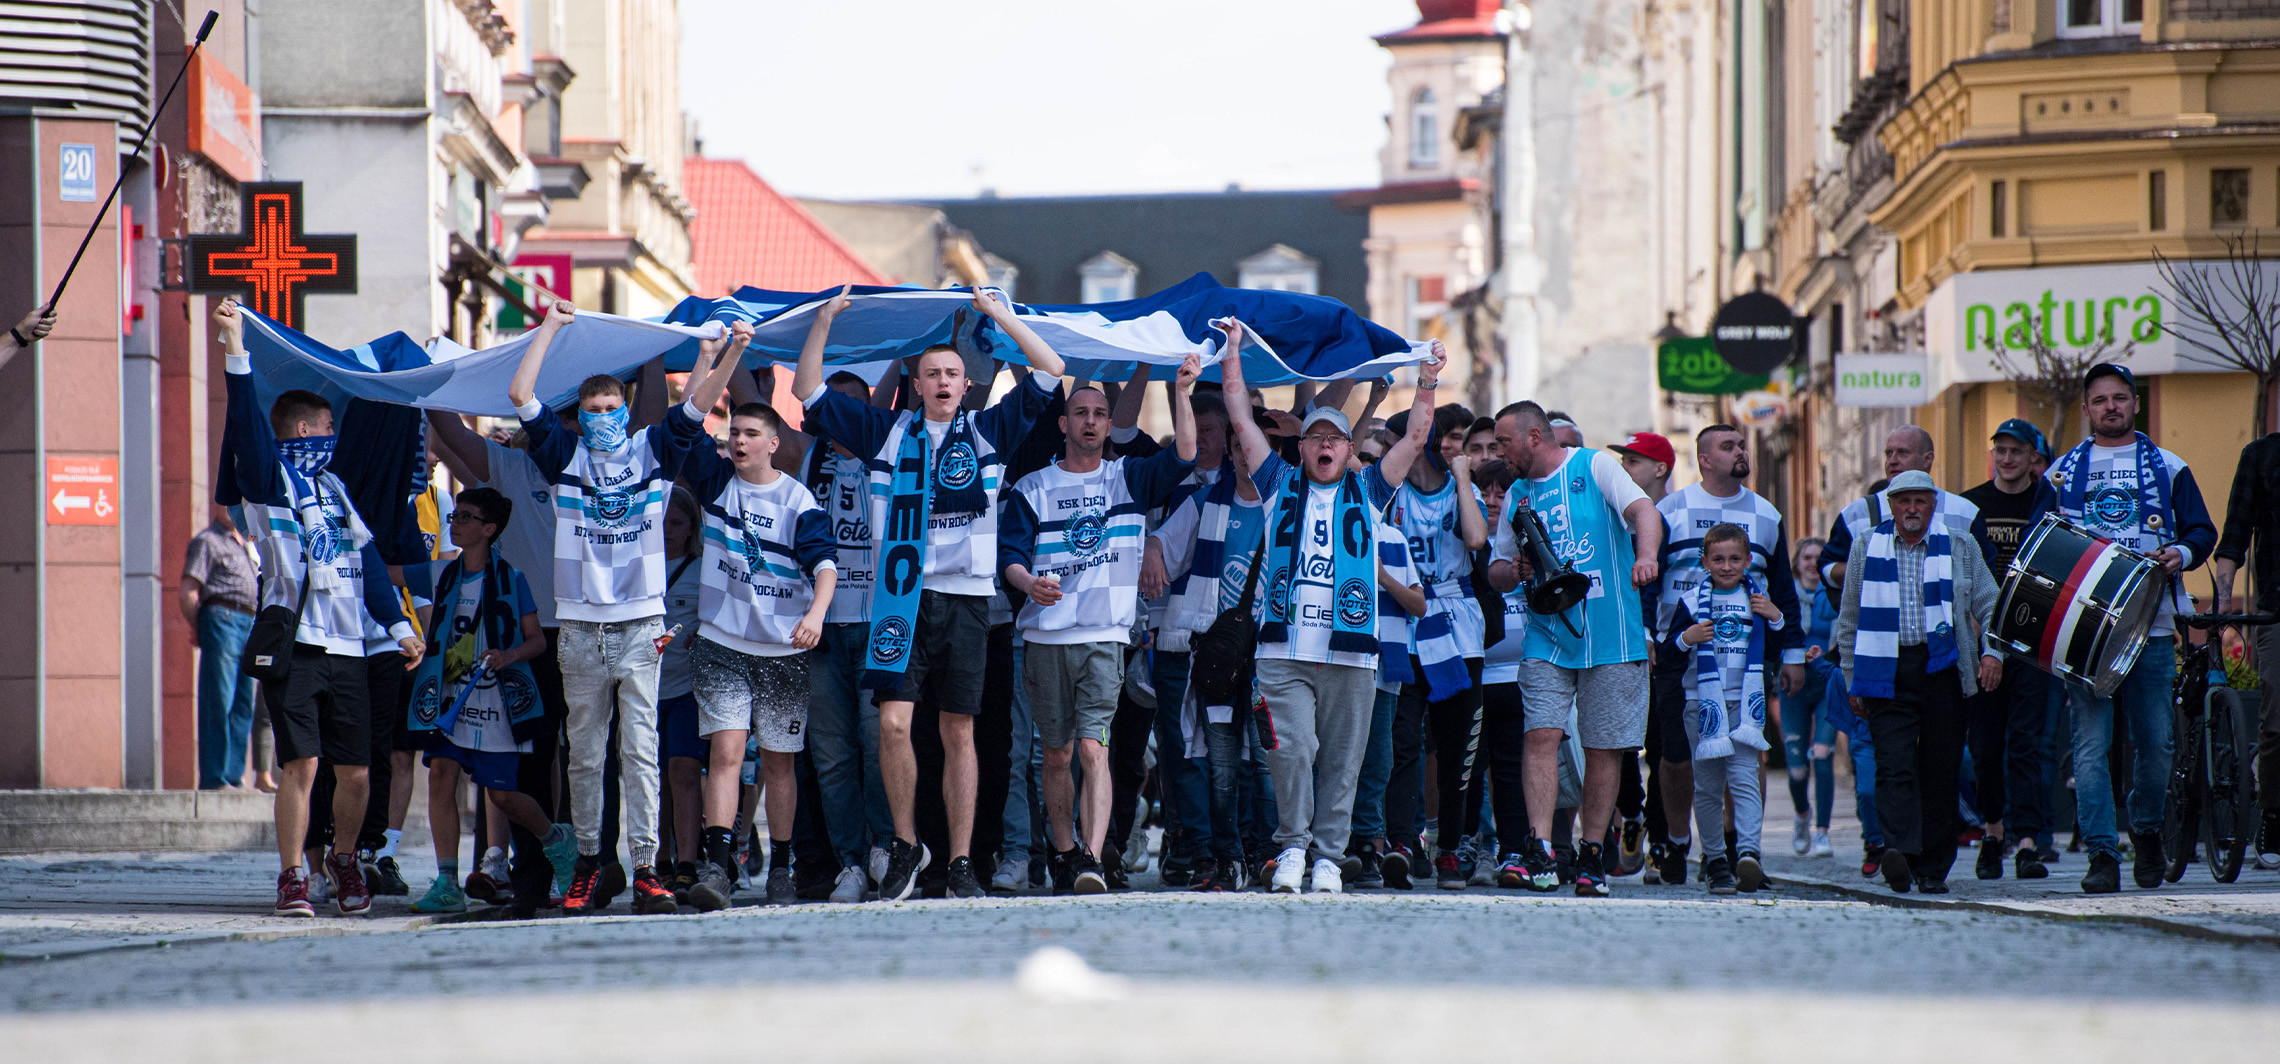 Inowrocław - To był biało-niebieski marsz ulicami Inowrocławia przed ważnym meczem